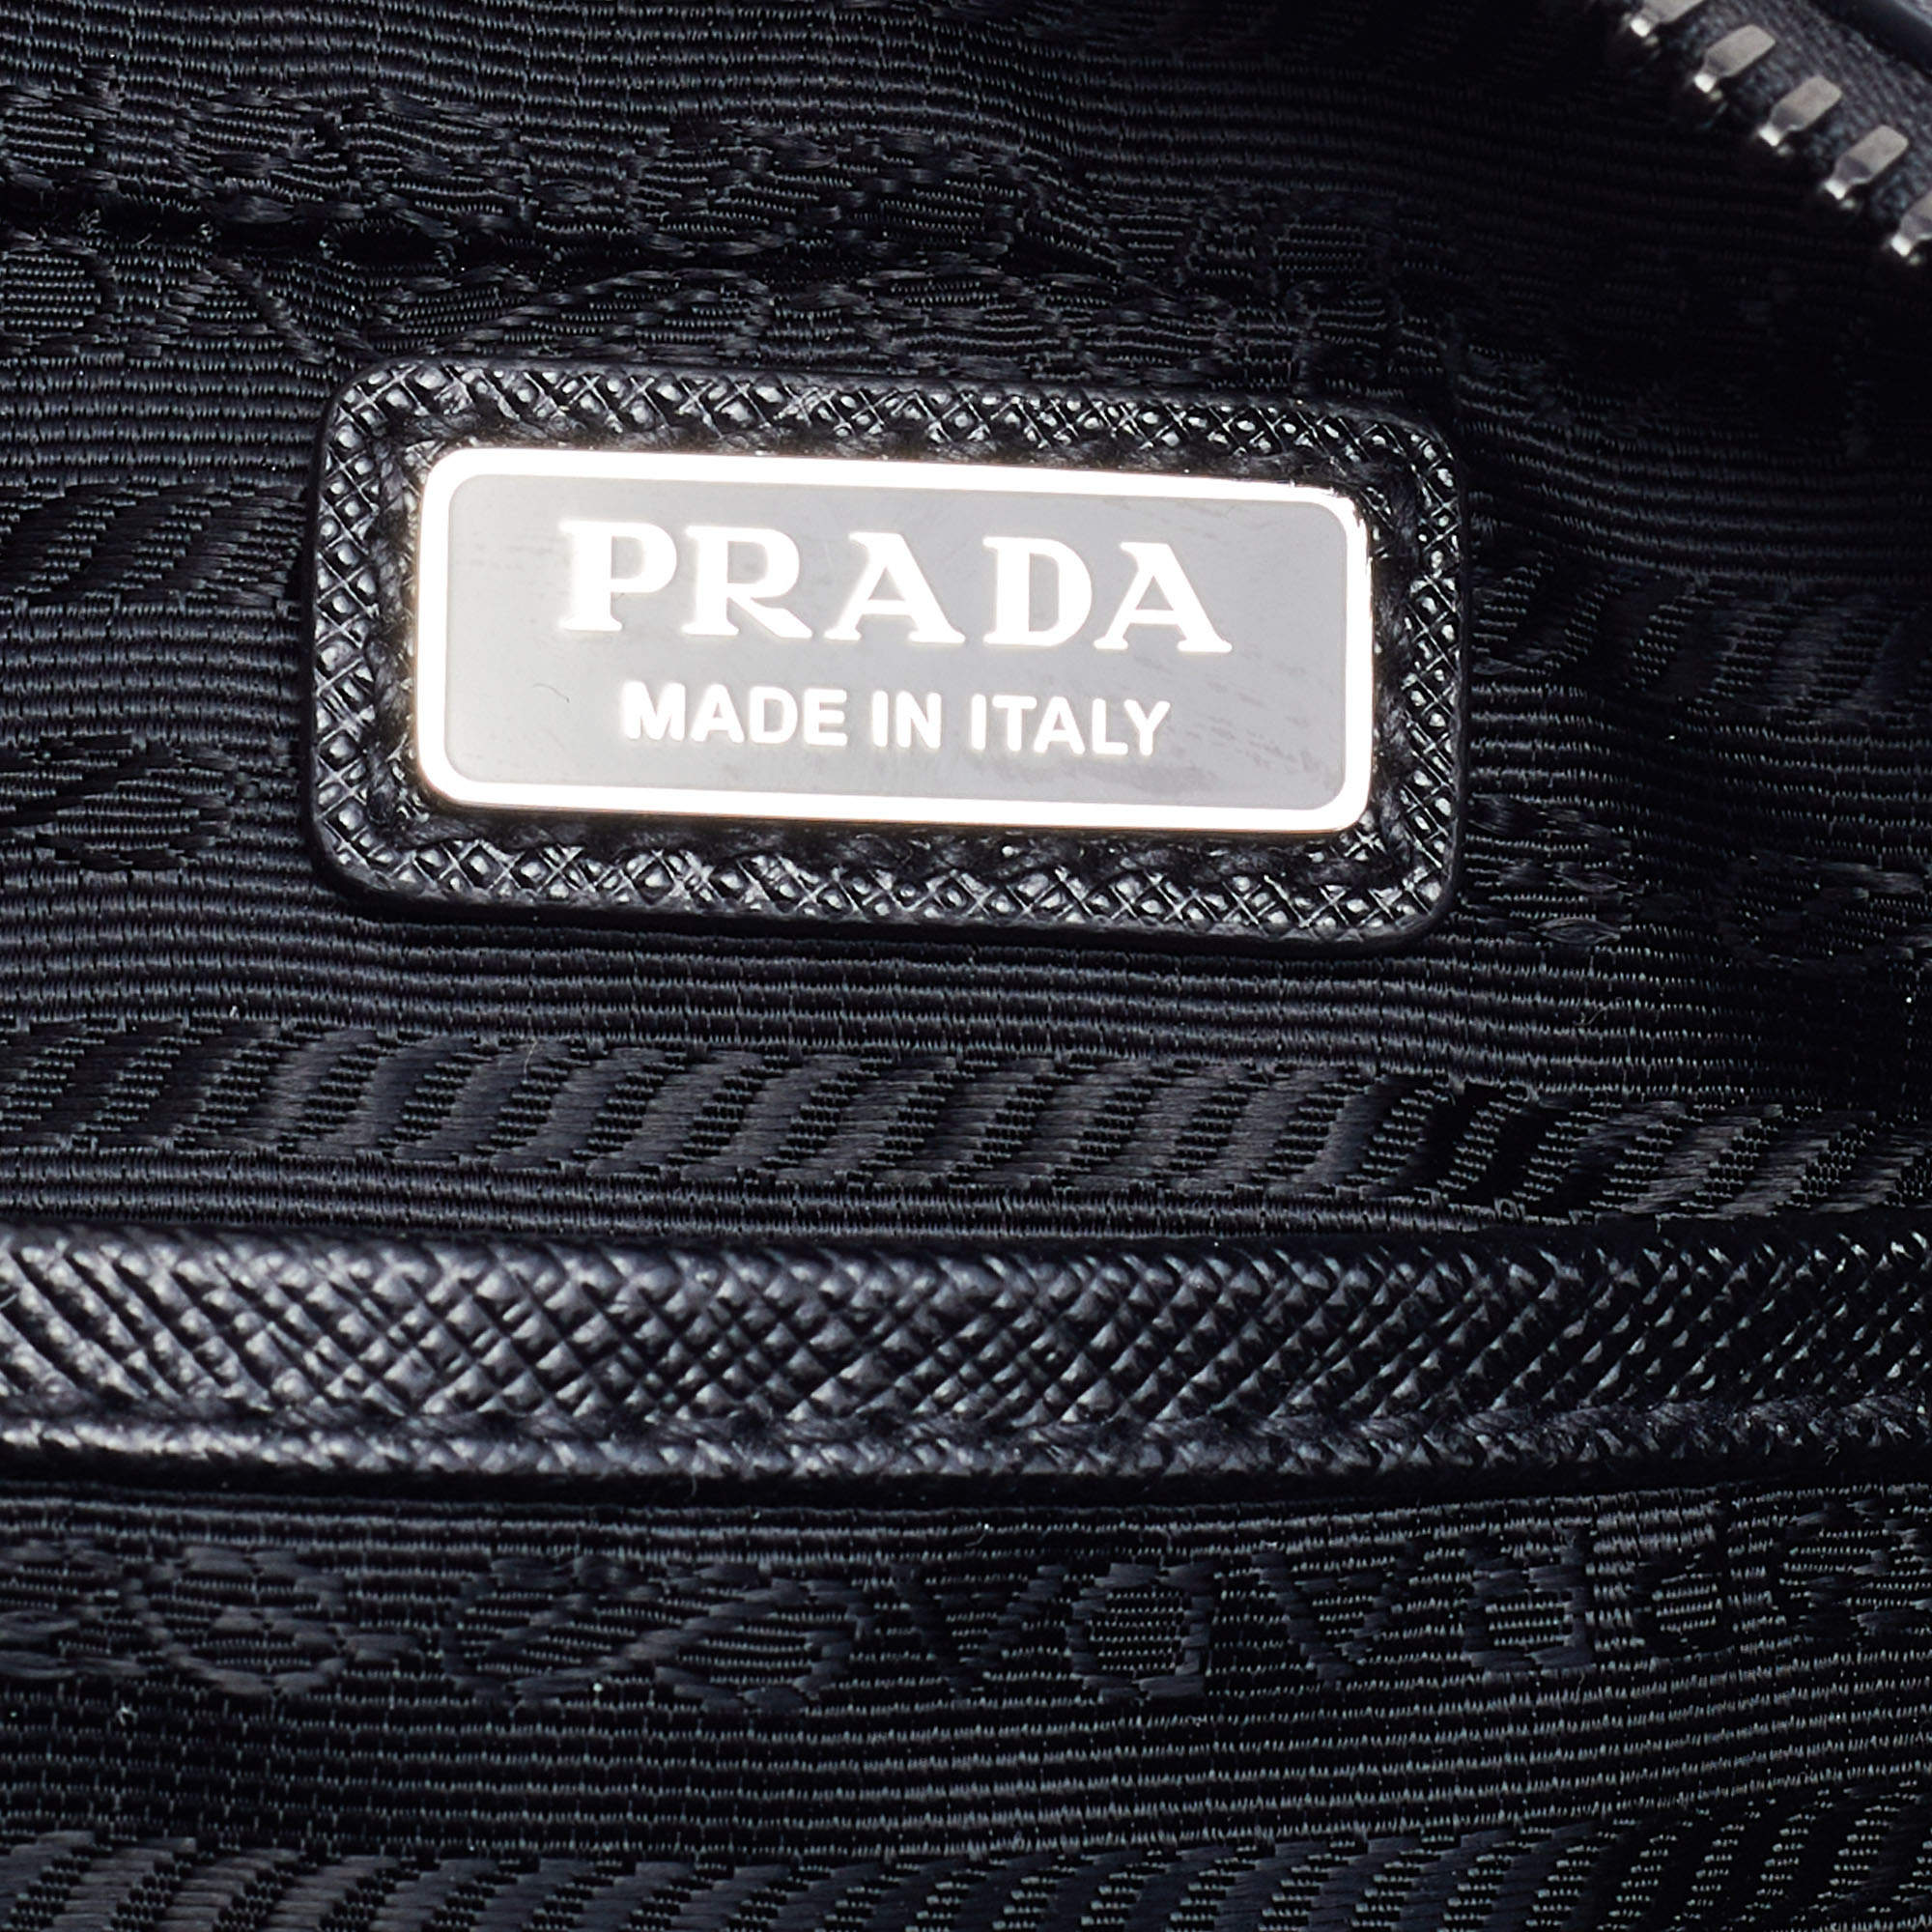 Très Bien - Prada Saffiano Leather Brique Bag Black